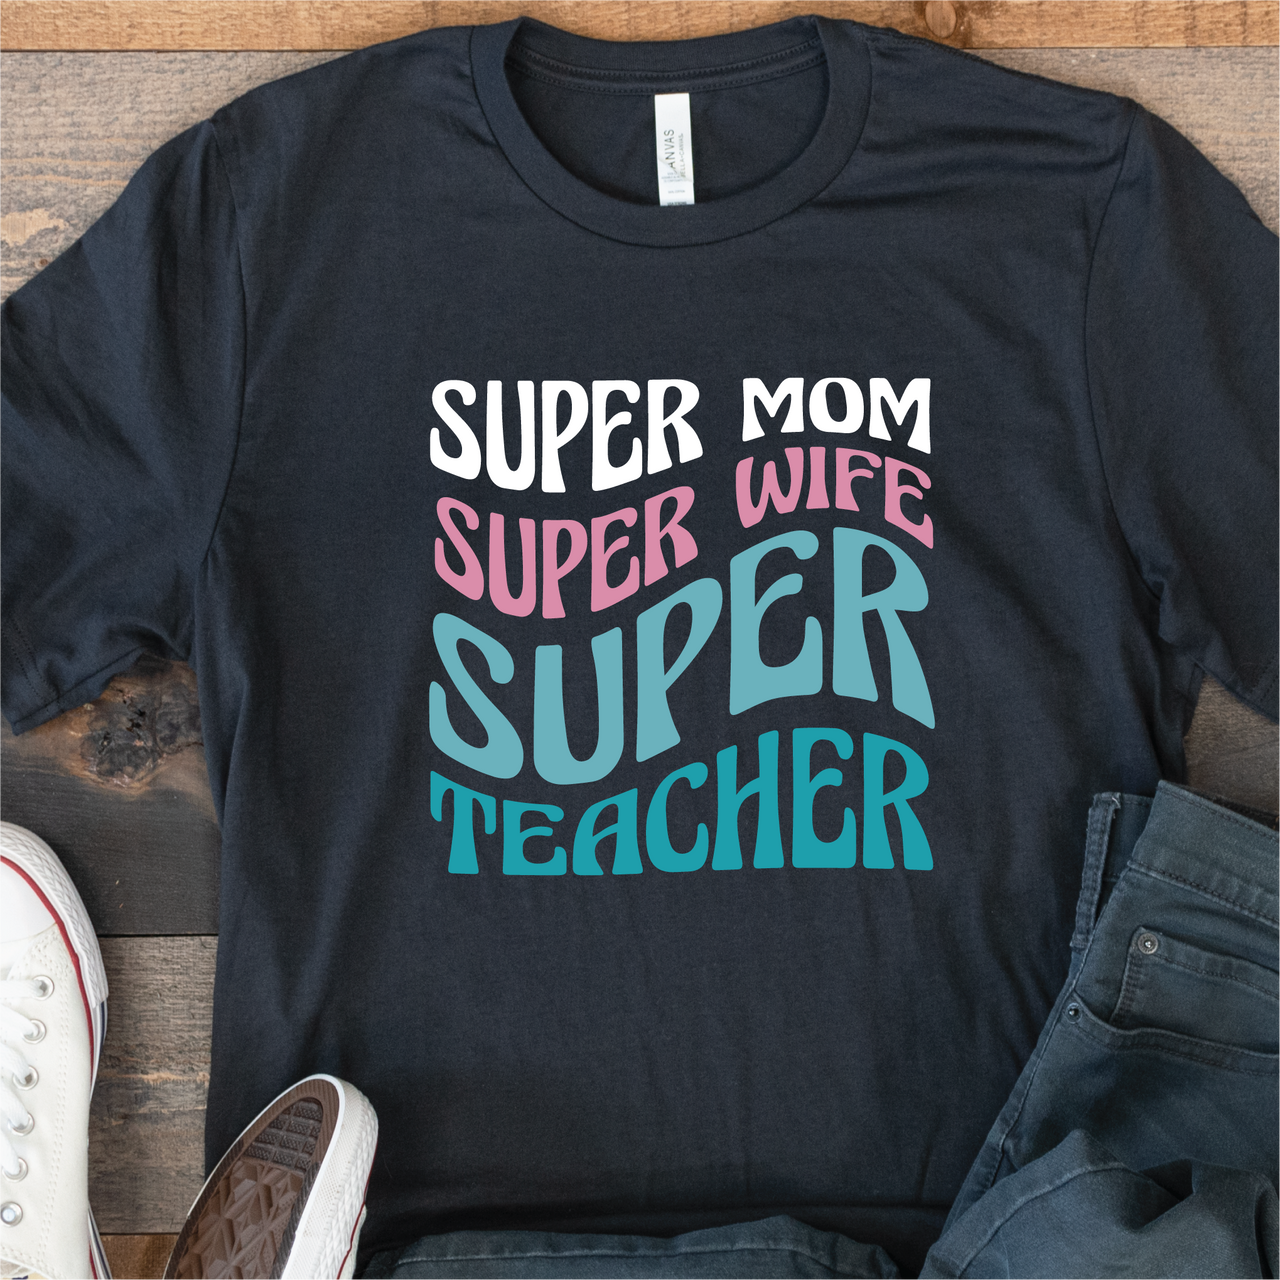 "Super Mom Super Wife Super Teacher" T-Shirt